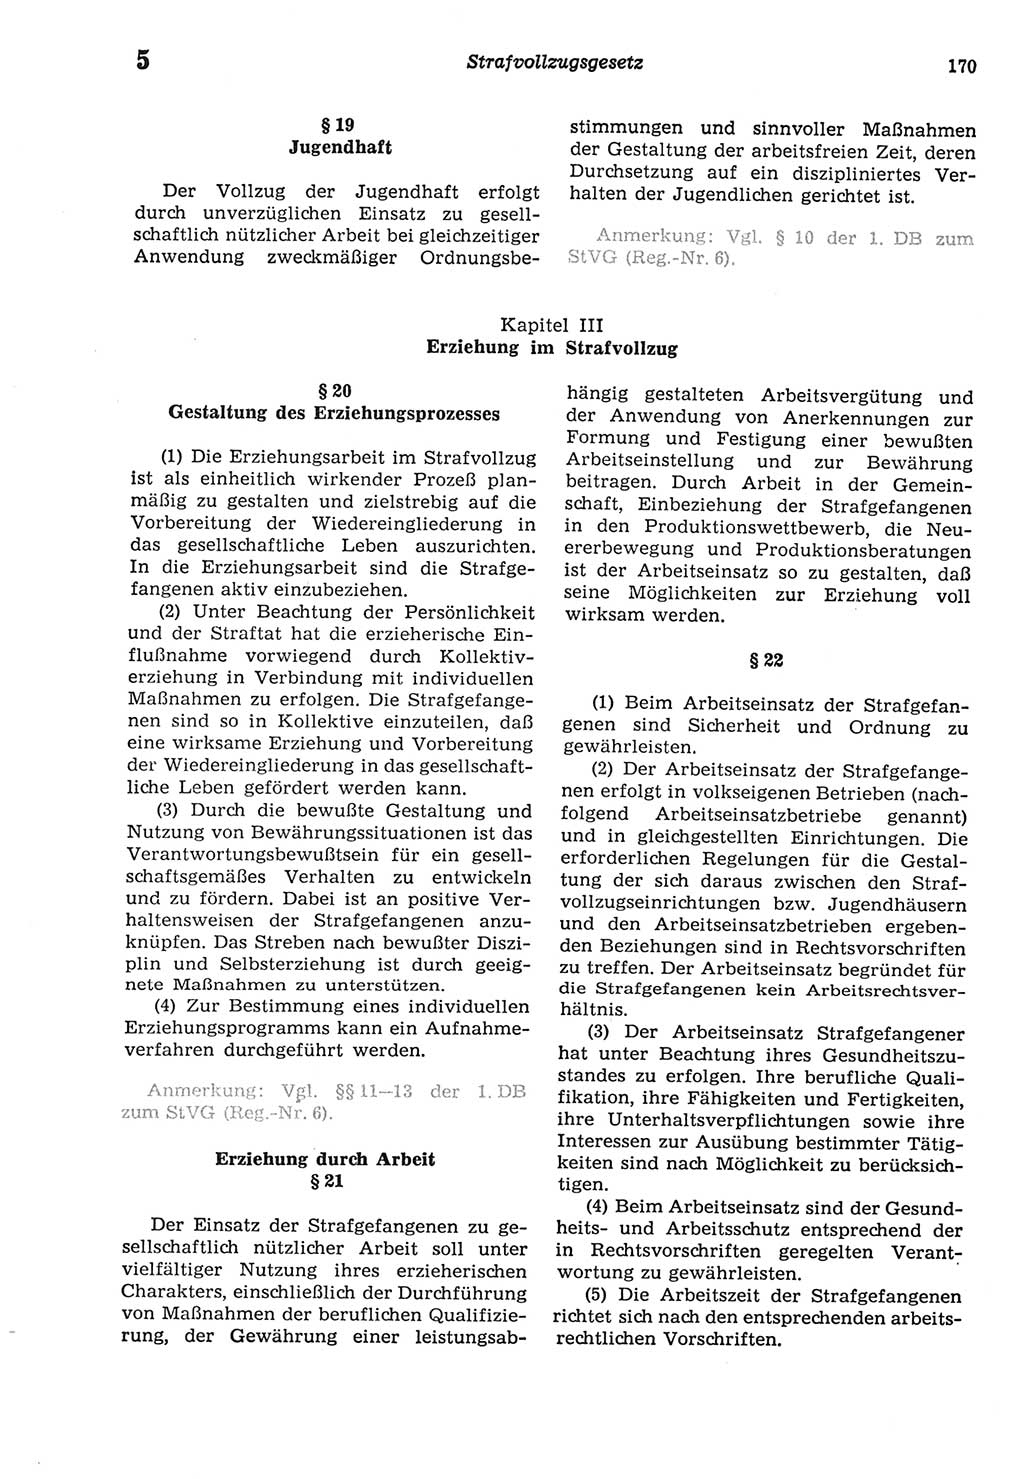 Strafprozeßordnung (StPO) der Deutschen Demokratischen Republik (DDR) sowie angrenzende Gesetze und Bestimmungen 1977, Seite 170 (StPO DDR Ges. Best. 1977, S. 170)